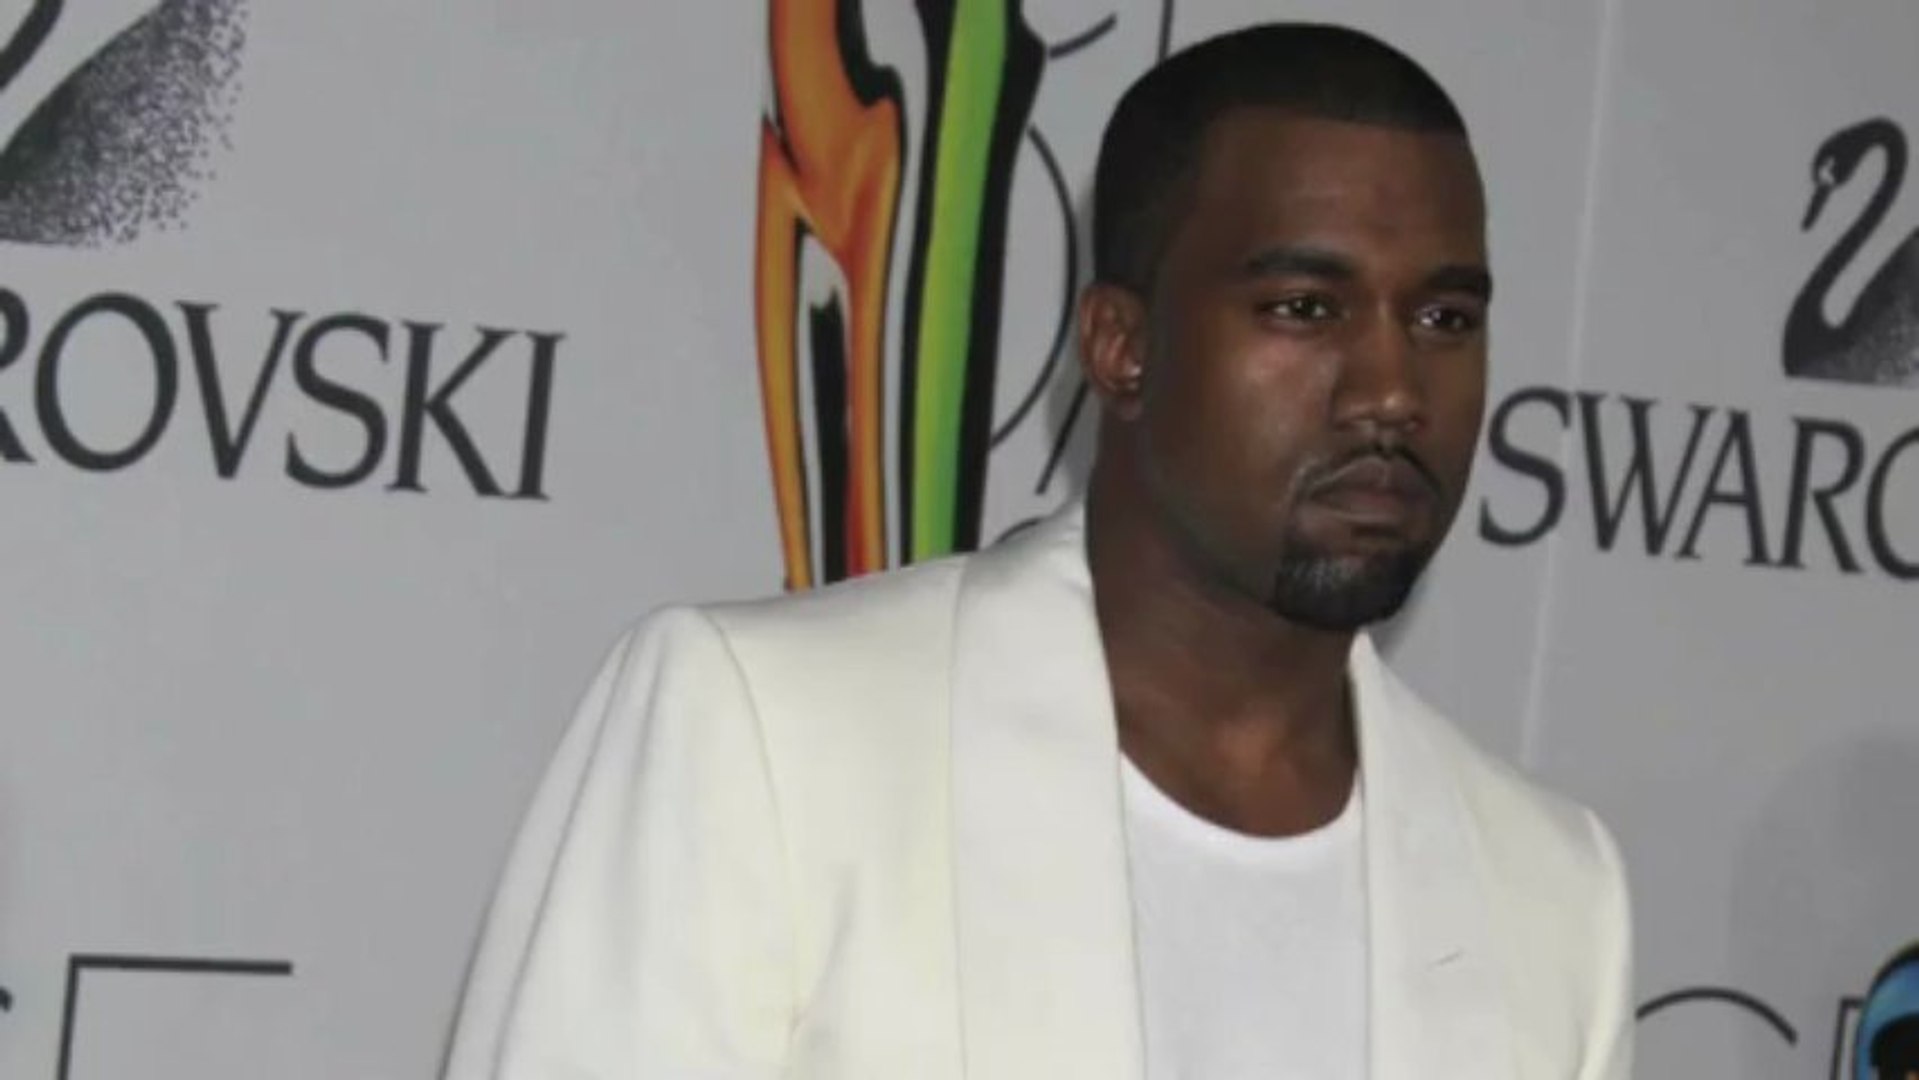 Kanye West Being Sued Over 'Gold Digger' Sample 